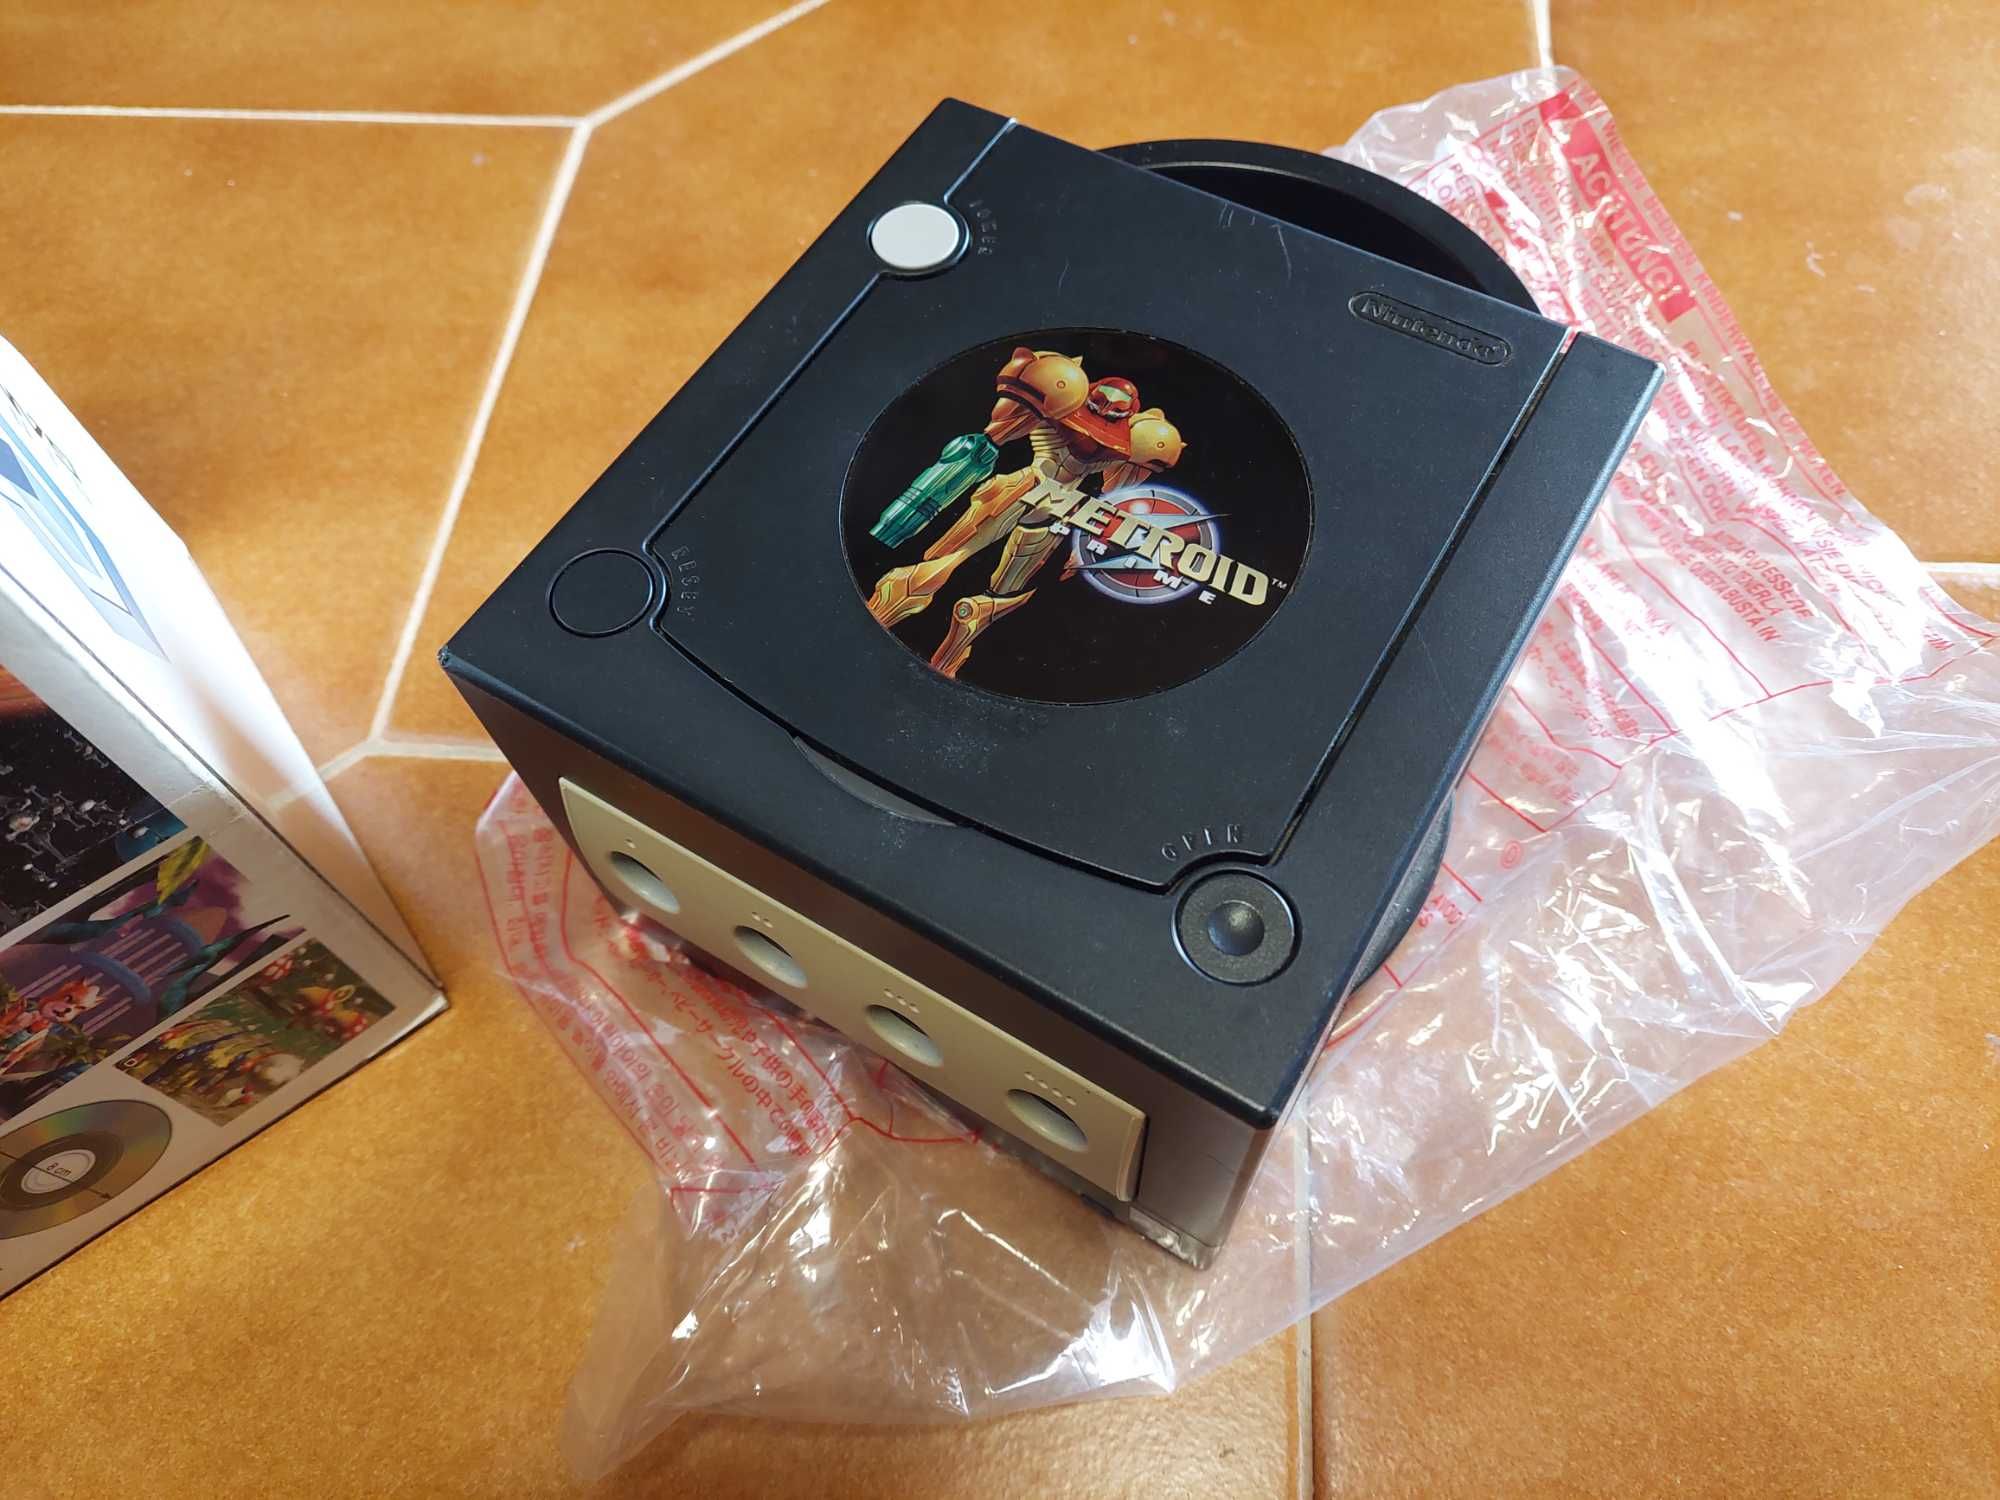 Consola Nintendo Gamecube versão Metroid Prime